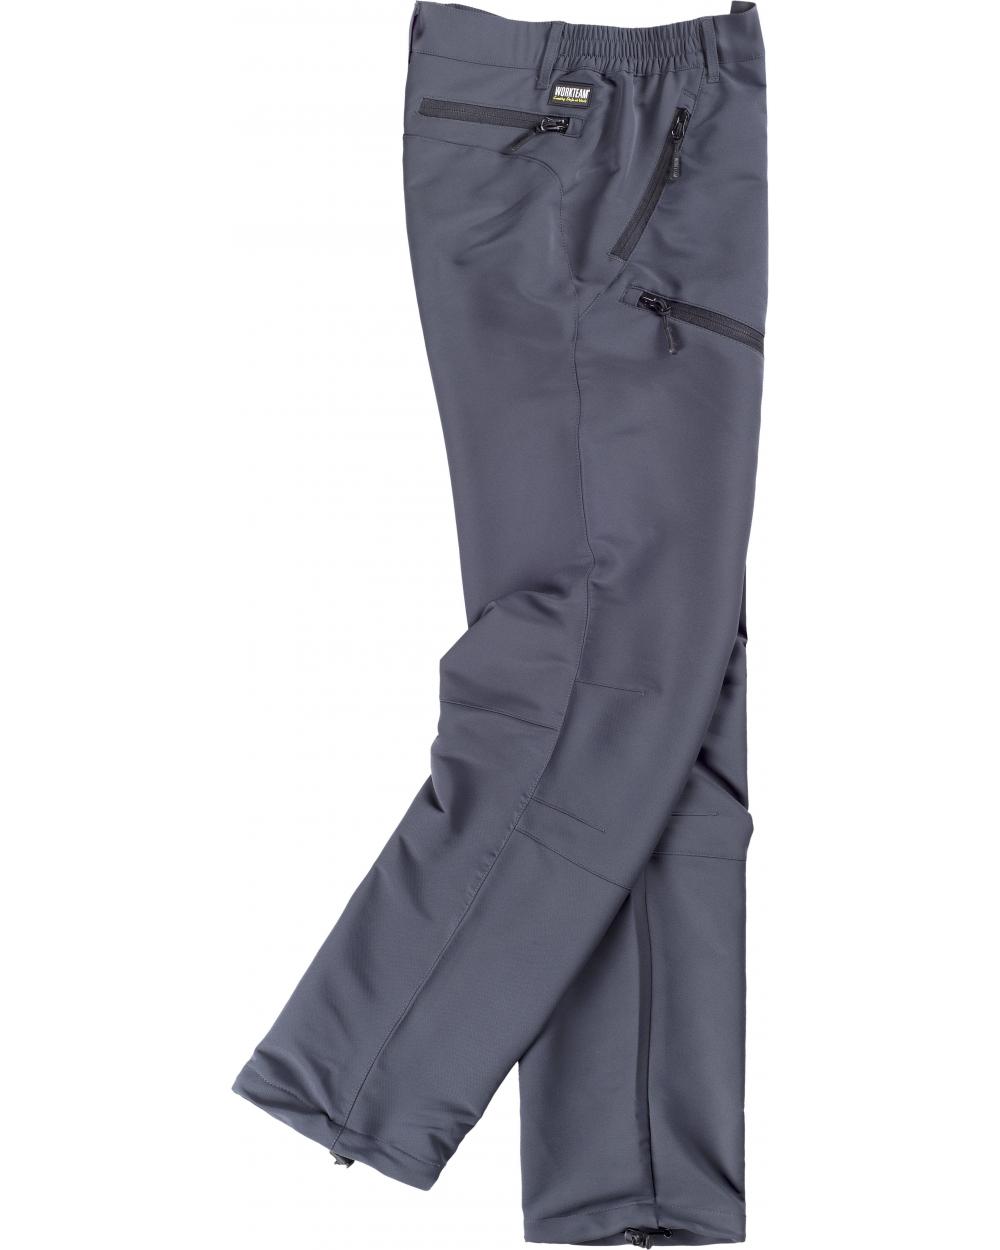 Comprar Pantalon de montaña tejido elastico S9850 Gris Oscuro workteam barato